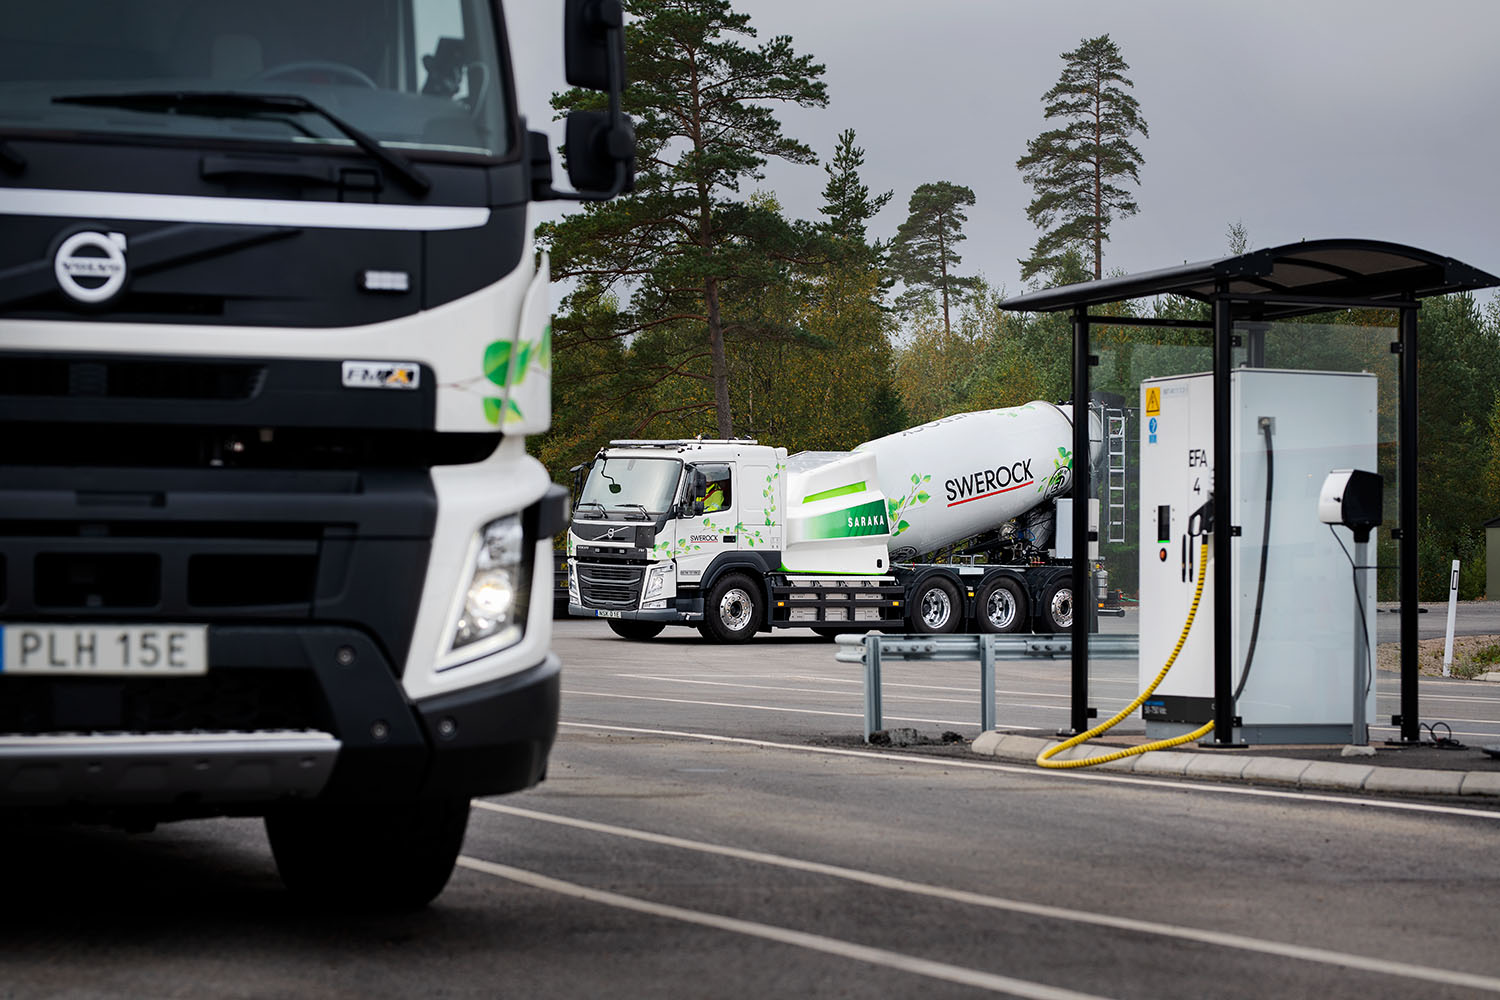 Elektryczne Volvo FM będzie dostarczać beton klientom Swerock na obszarach miejskich.